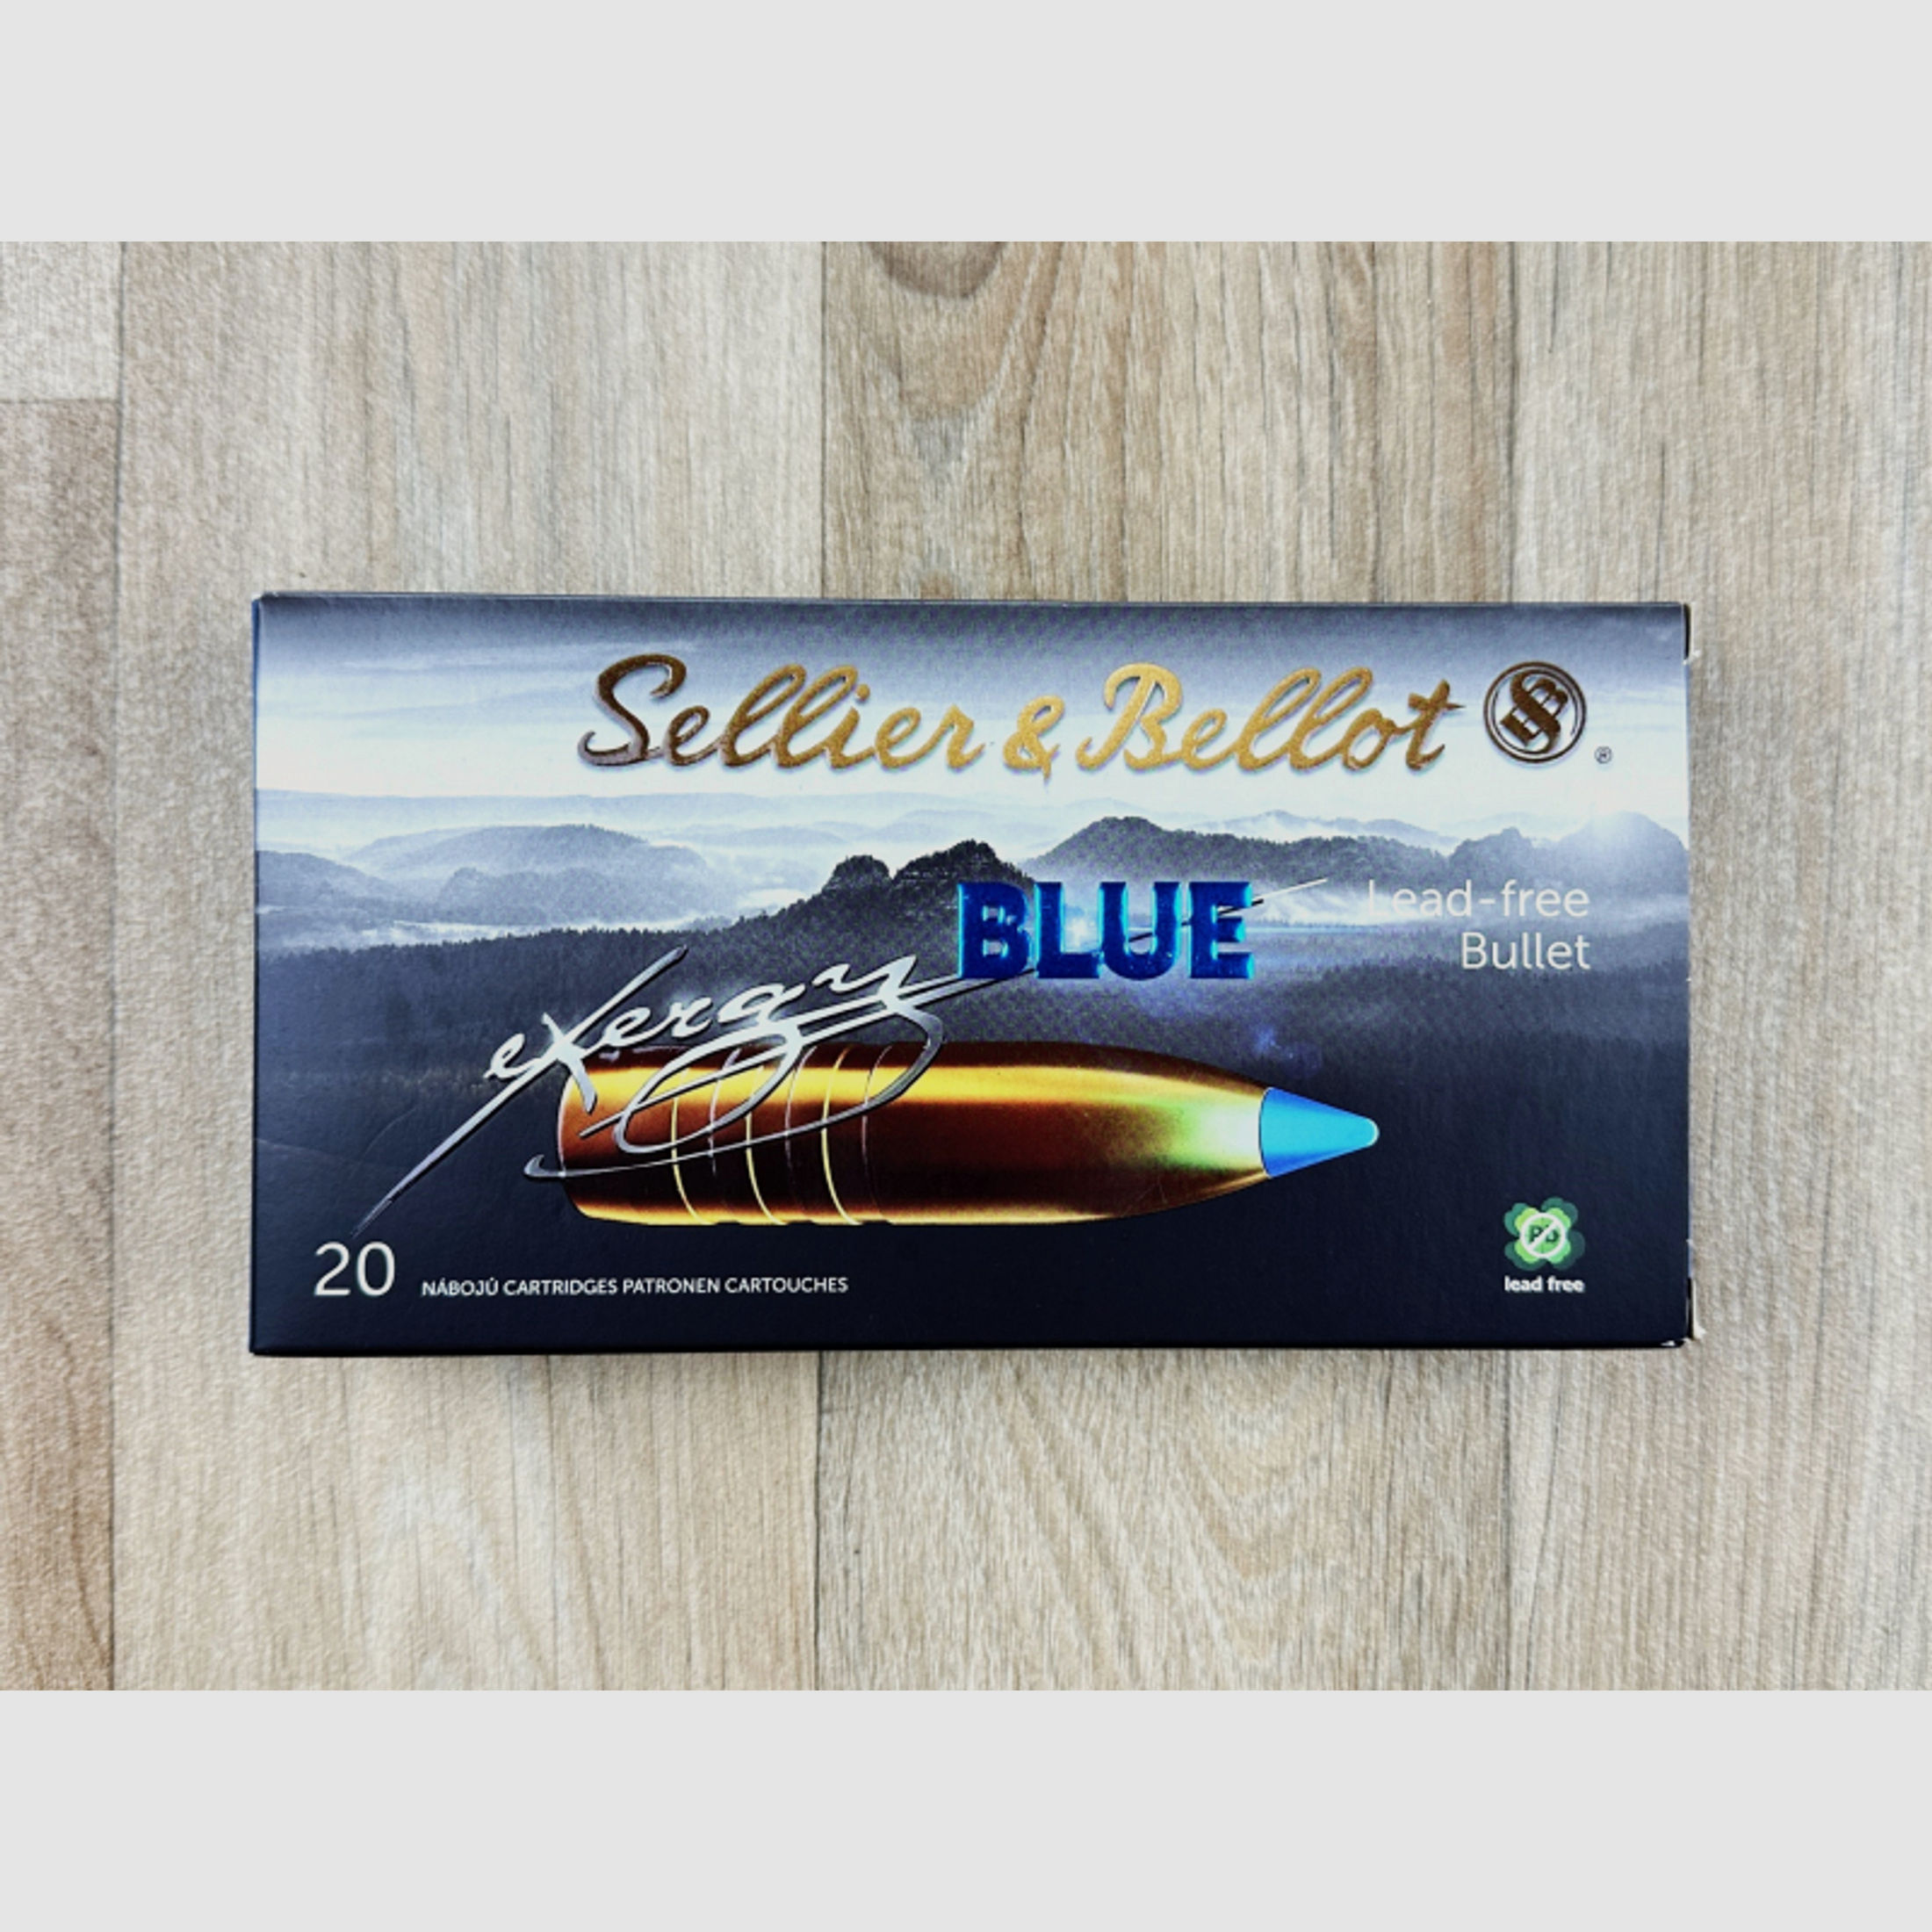 20 Schuss S&B exergy BLUE | Kaliber 7x57 | Sellier & Bellot | 9,7g 150grs TXRG